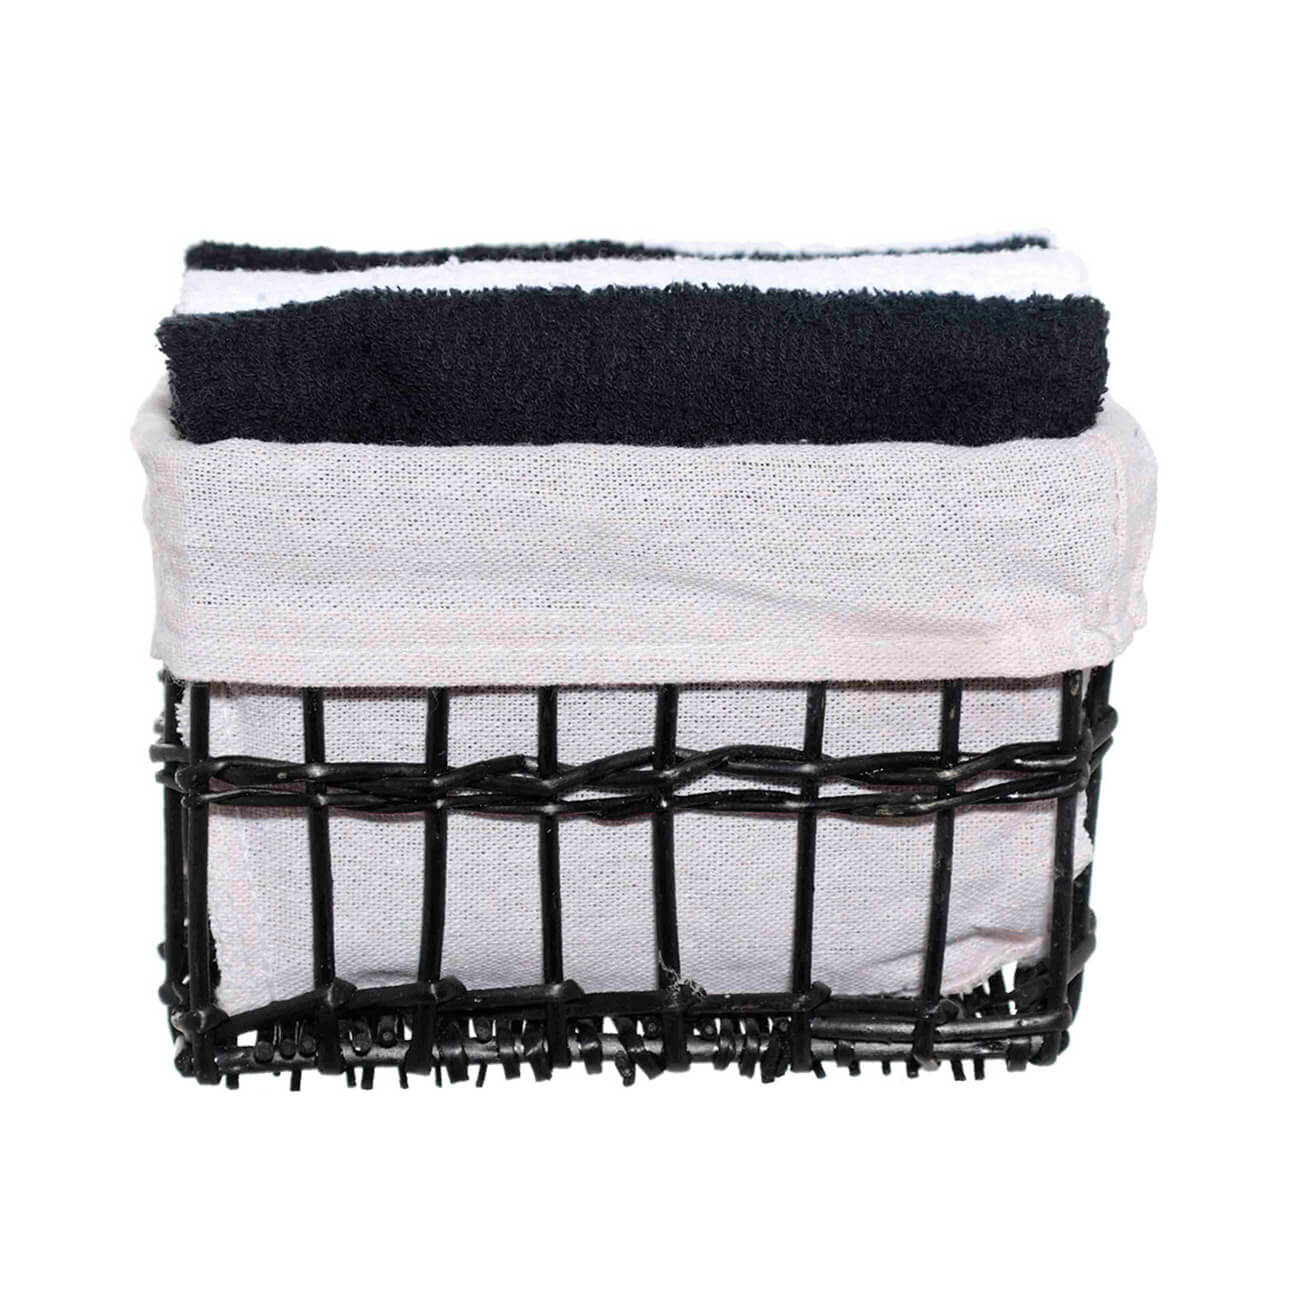 Полотенце, 30х30 см, 4 шт, в корзине, хлопок/лоза, черное/белое, Basket towel полотенце 30х30 см 4 шт в корзине хлопок дерево белое серое basket towel